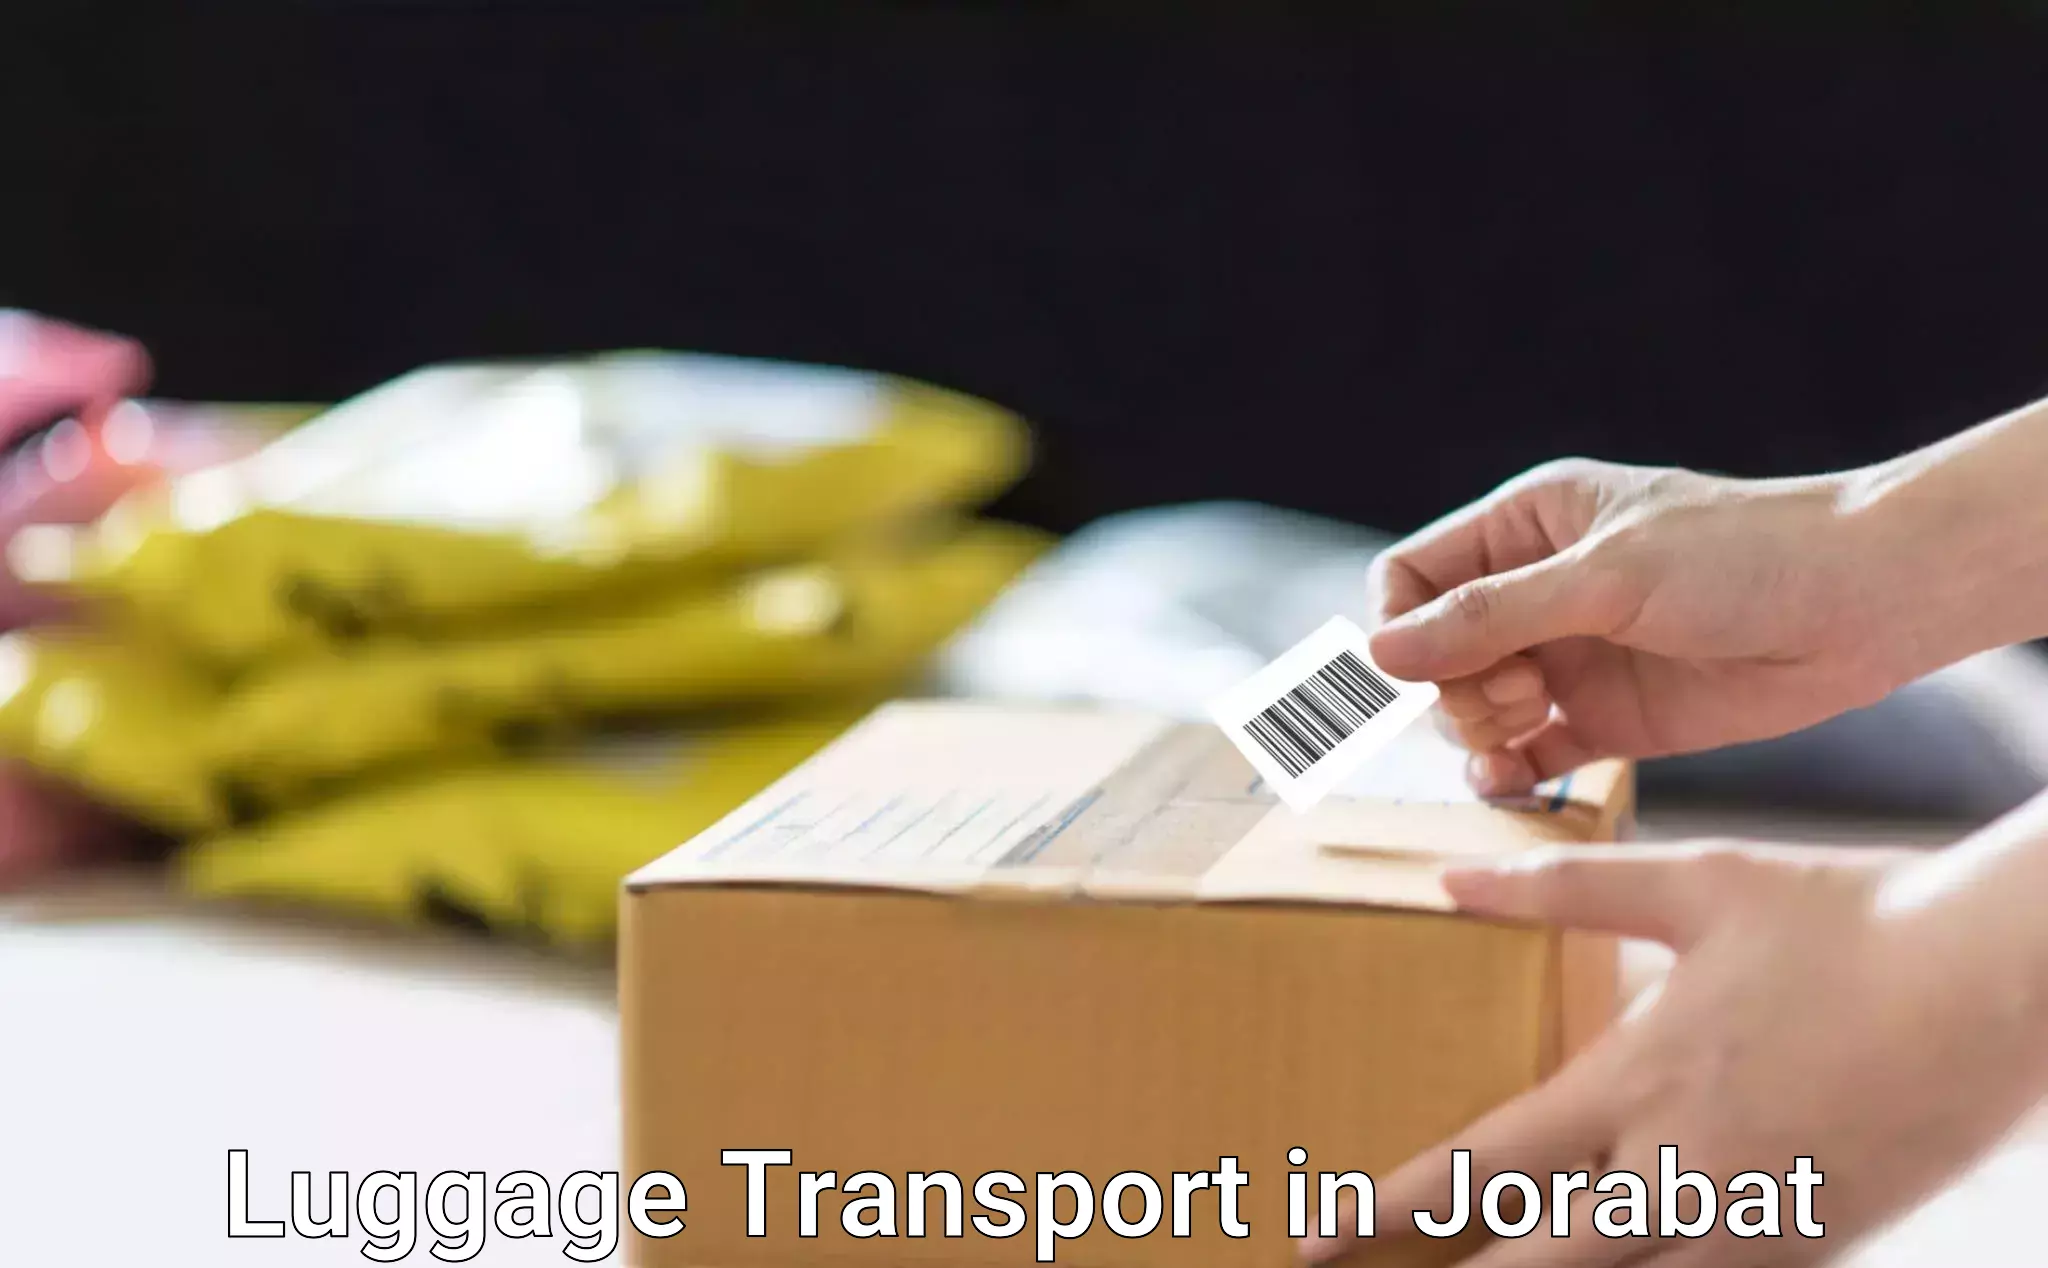 Hassle-free luggage shipping in Jorabat